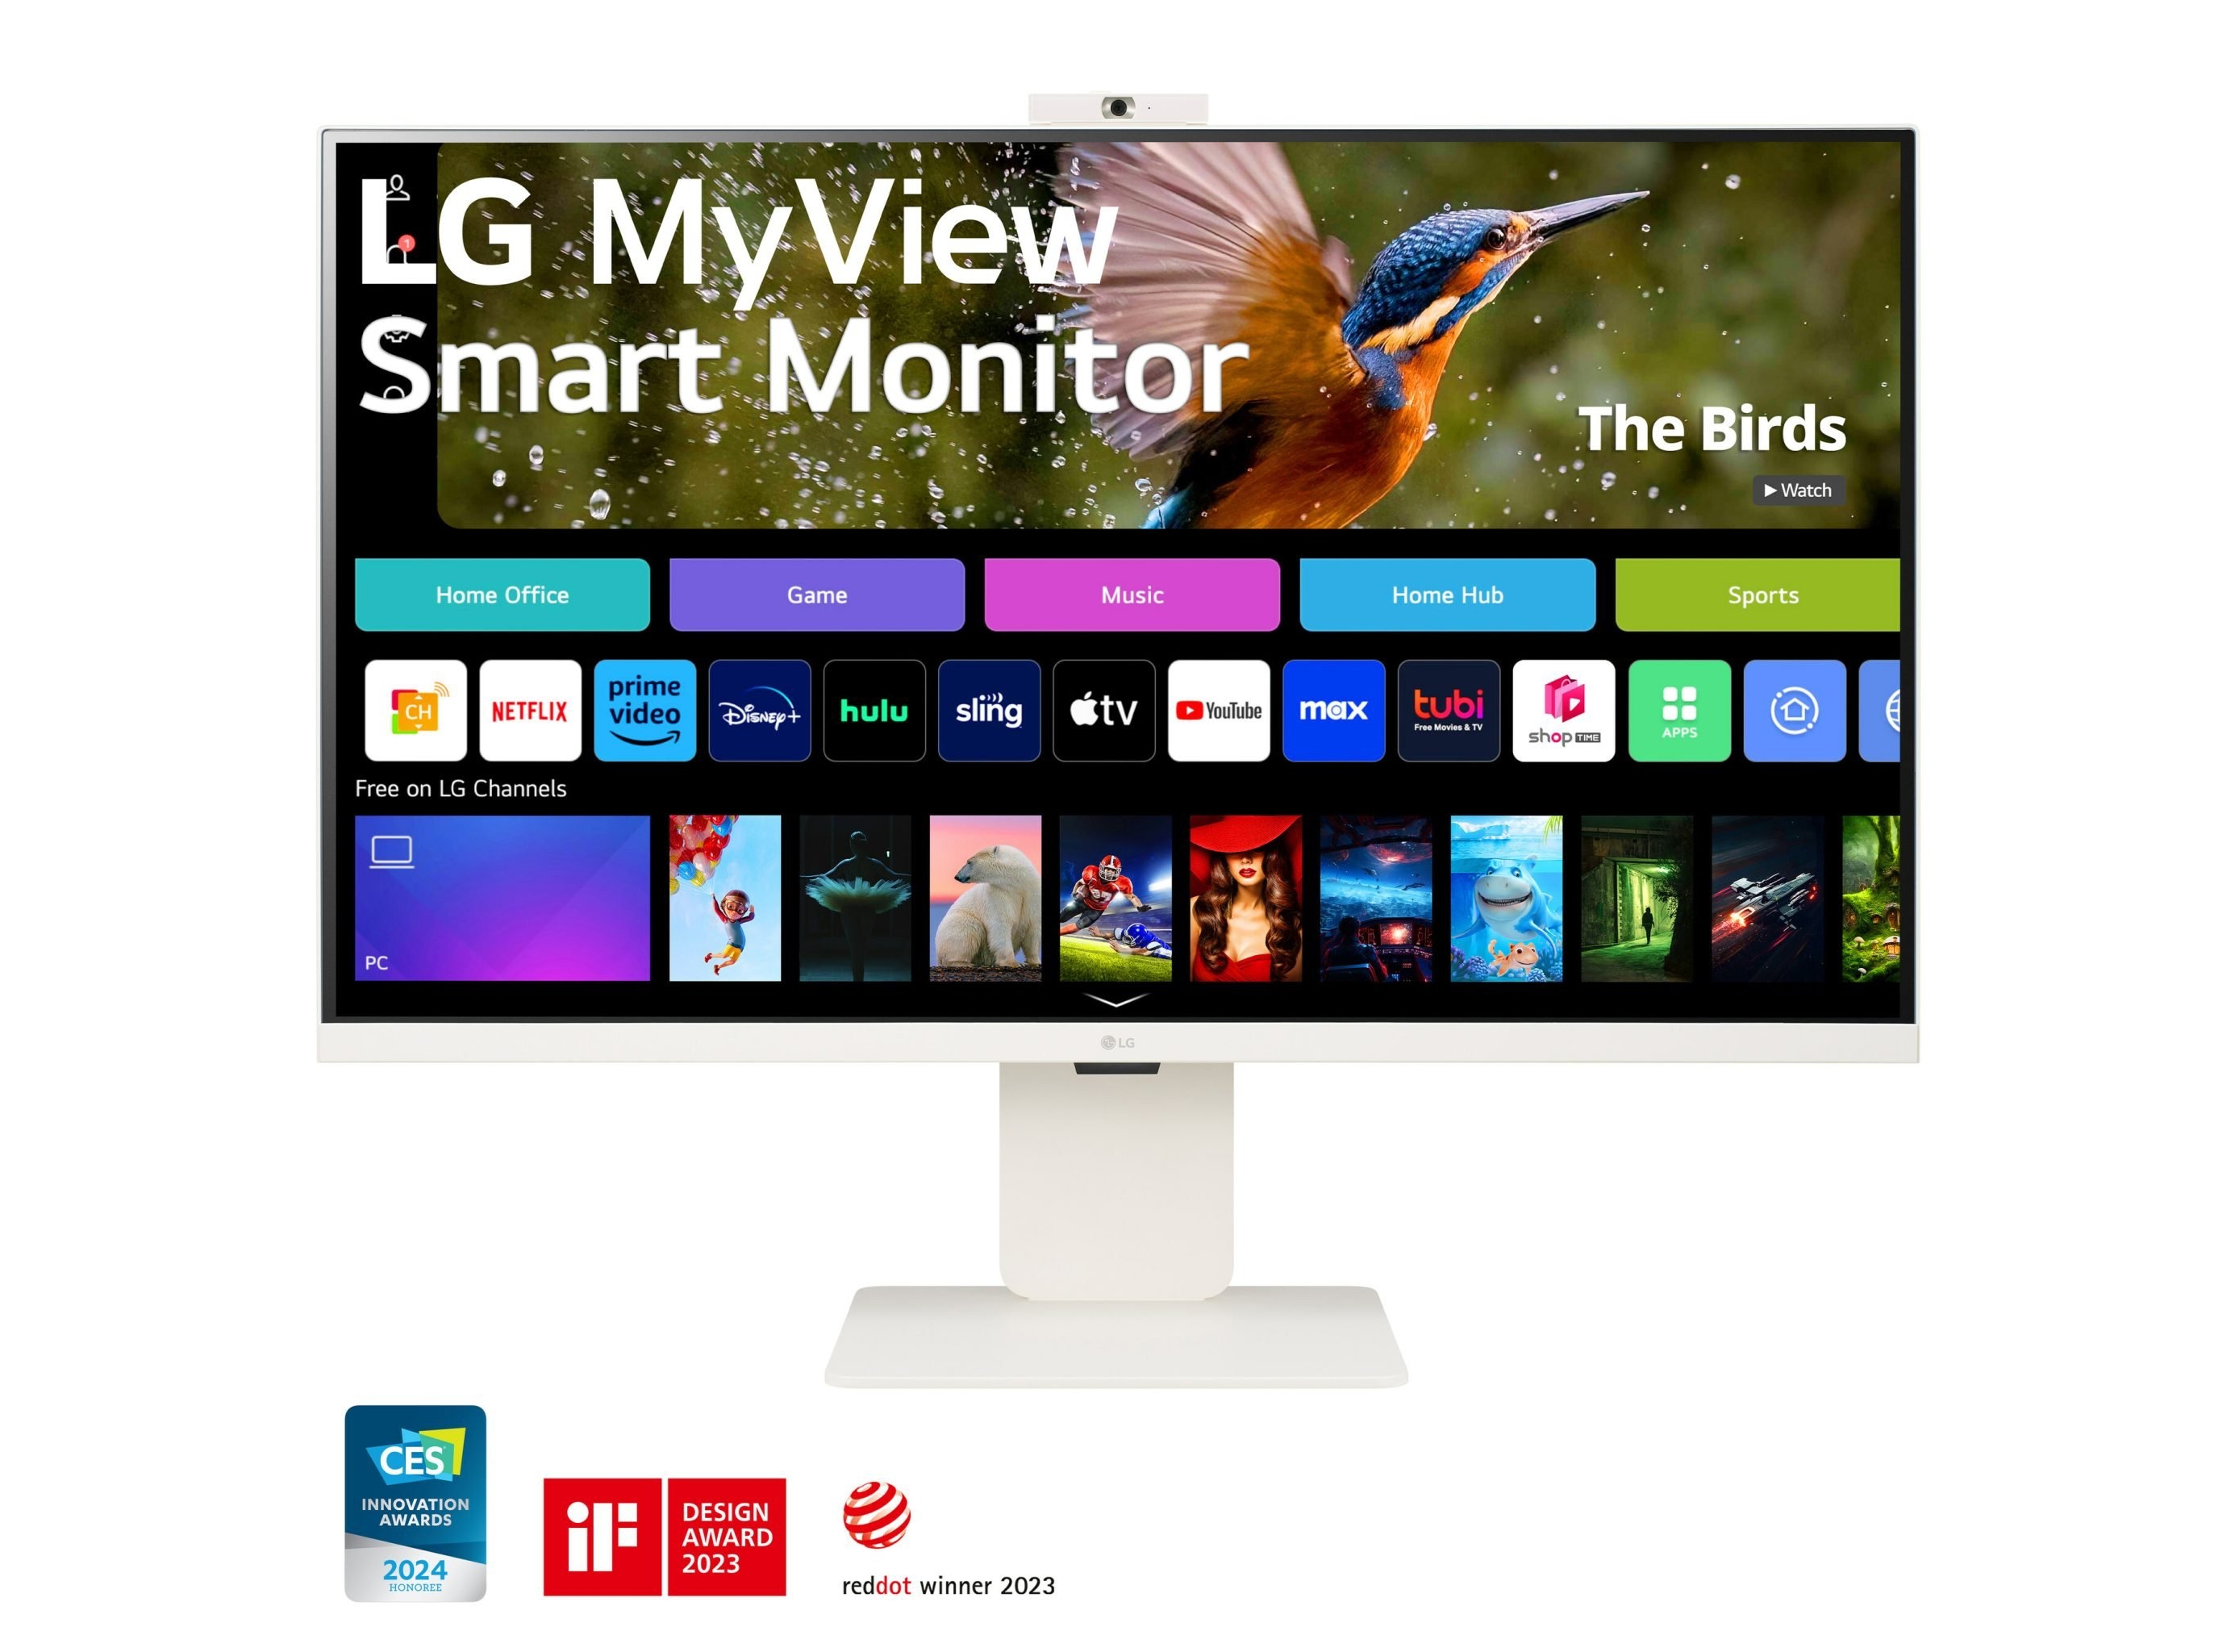 LG hat eine Reihe von MyView Smart Monitoren mit bis zu 4K-Bildschirmen, AirPlay 2 und webOS an Bord zu Preisen ab 199 $ angekündigt.